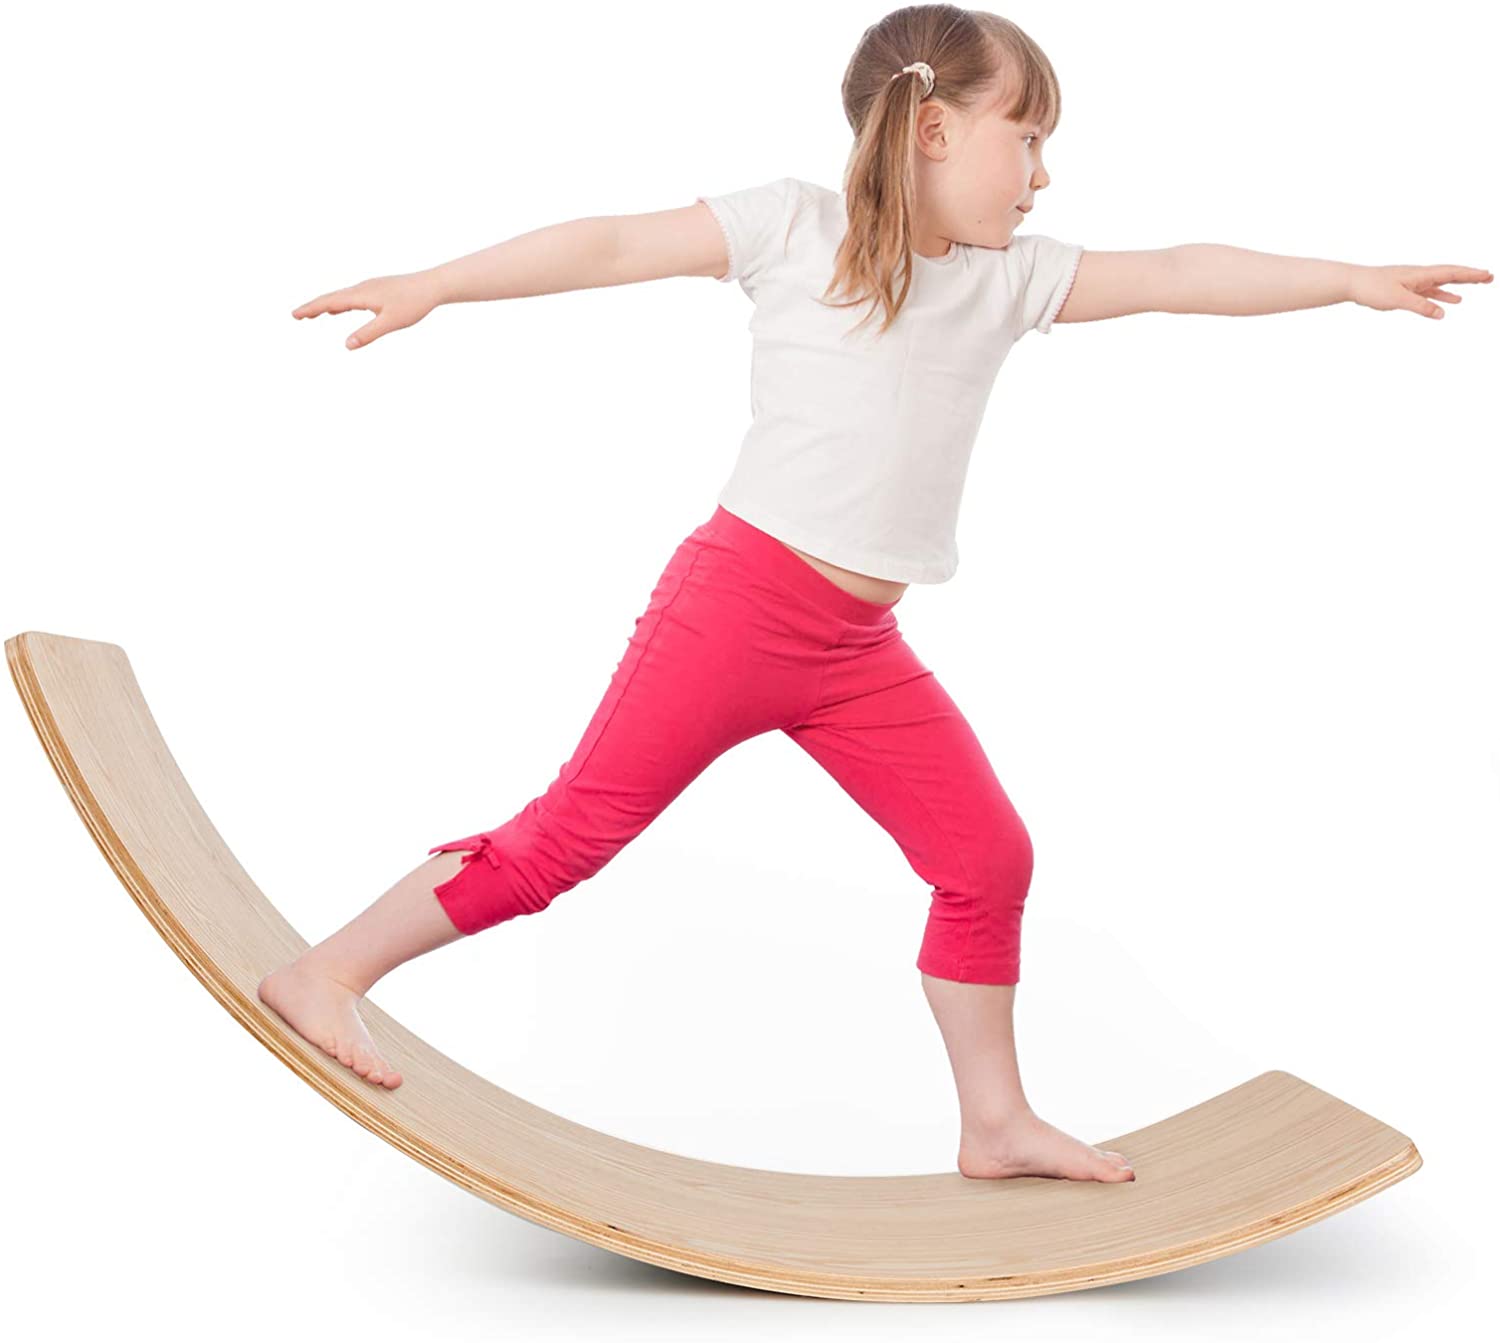 tabla balanceadora didactica de equilibrio y estimulacion vestibular para gimnasio infantil terapeutico niños estimula el sistema vestibular